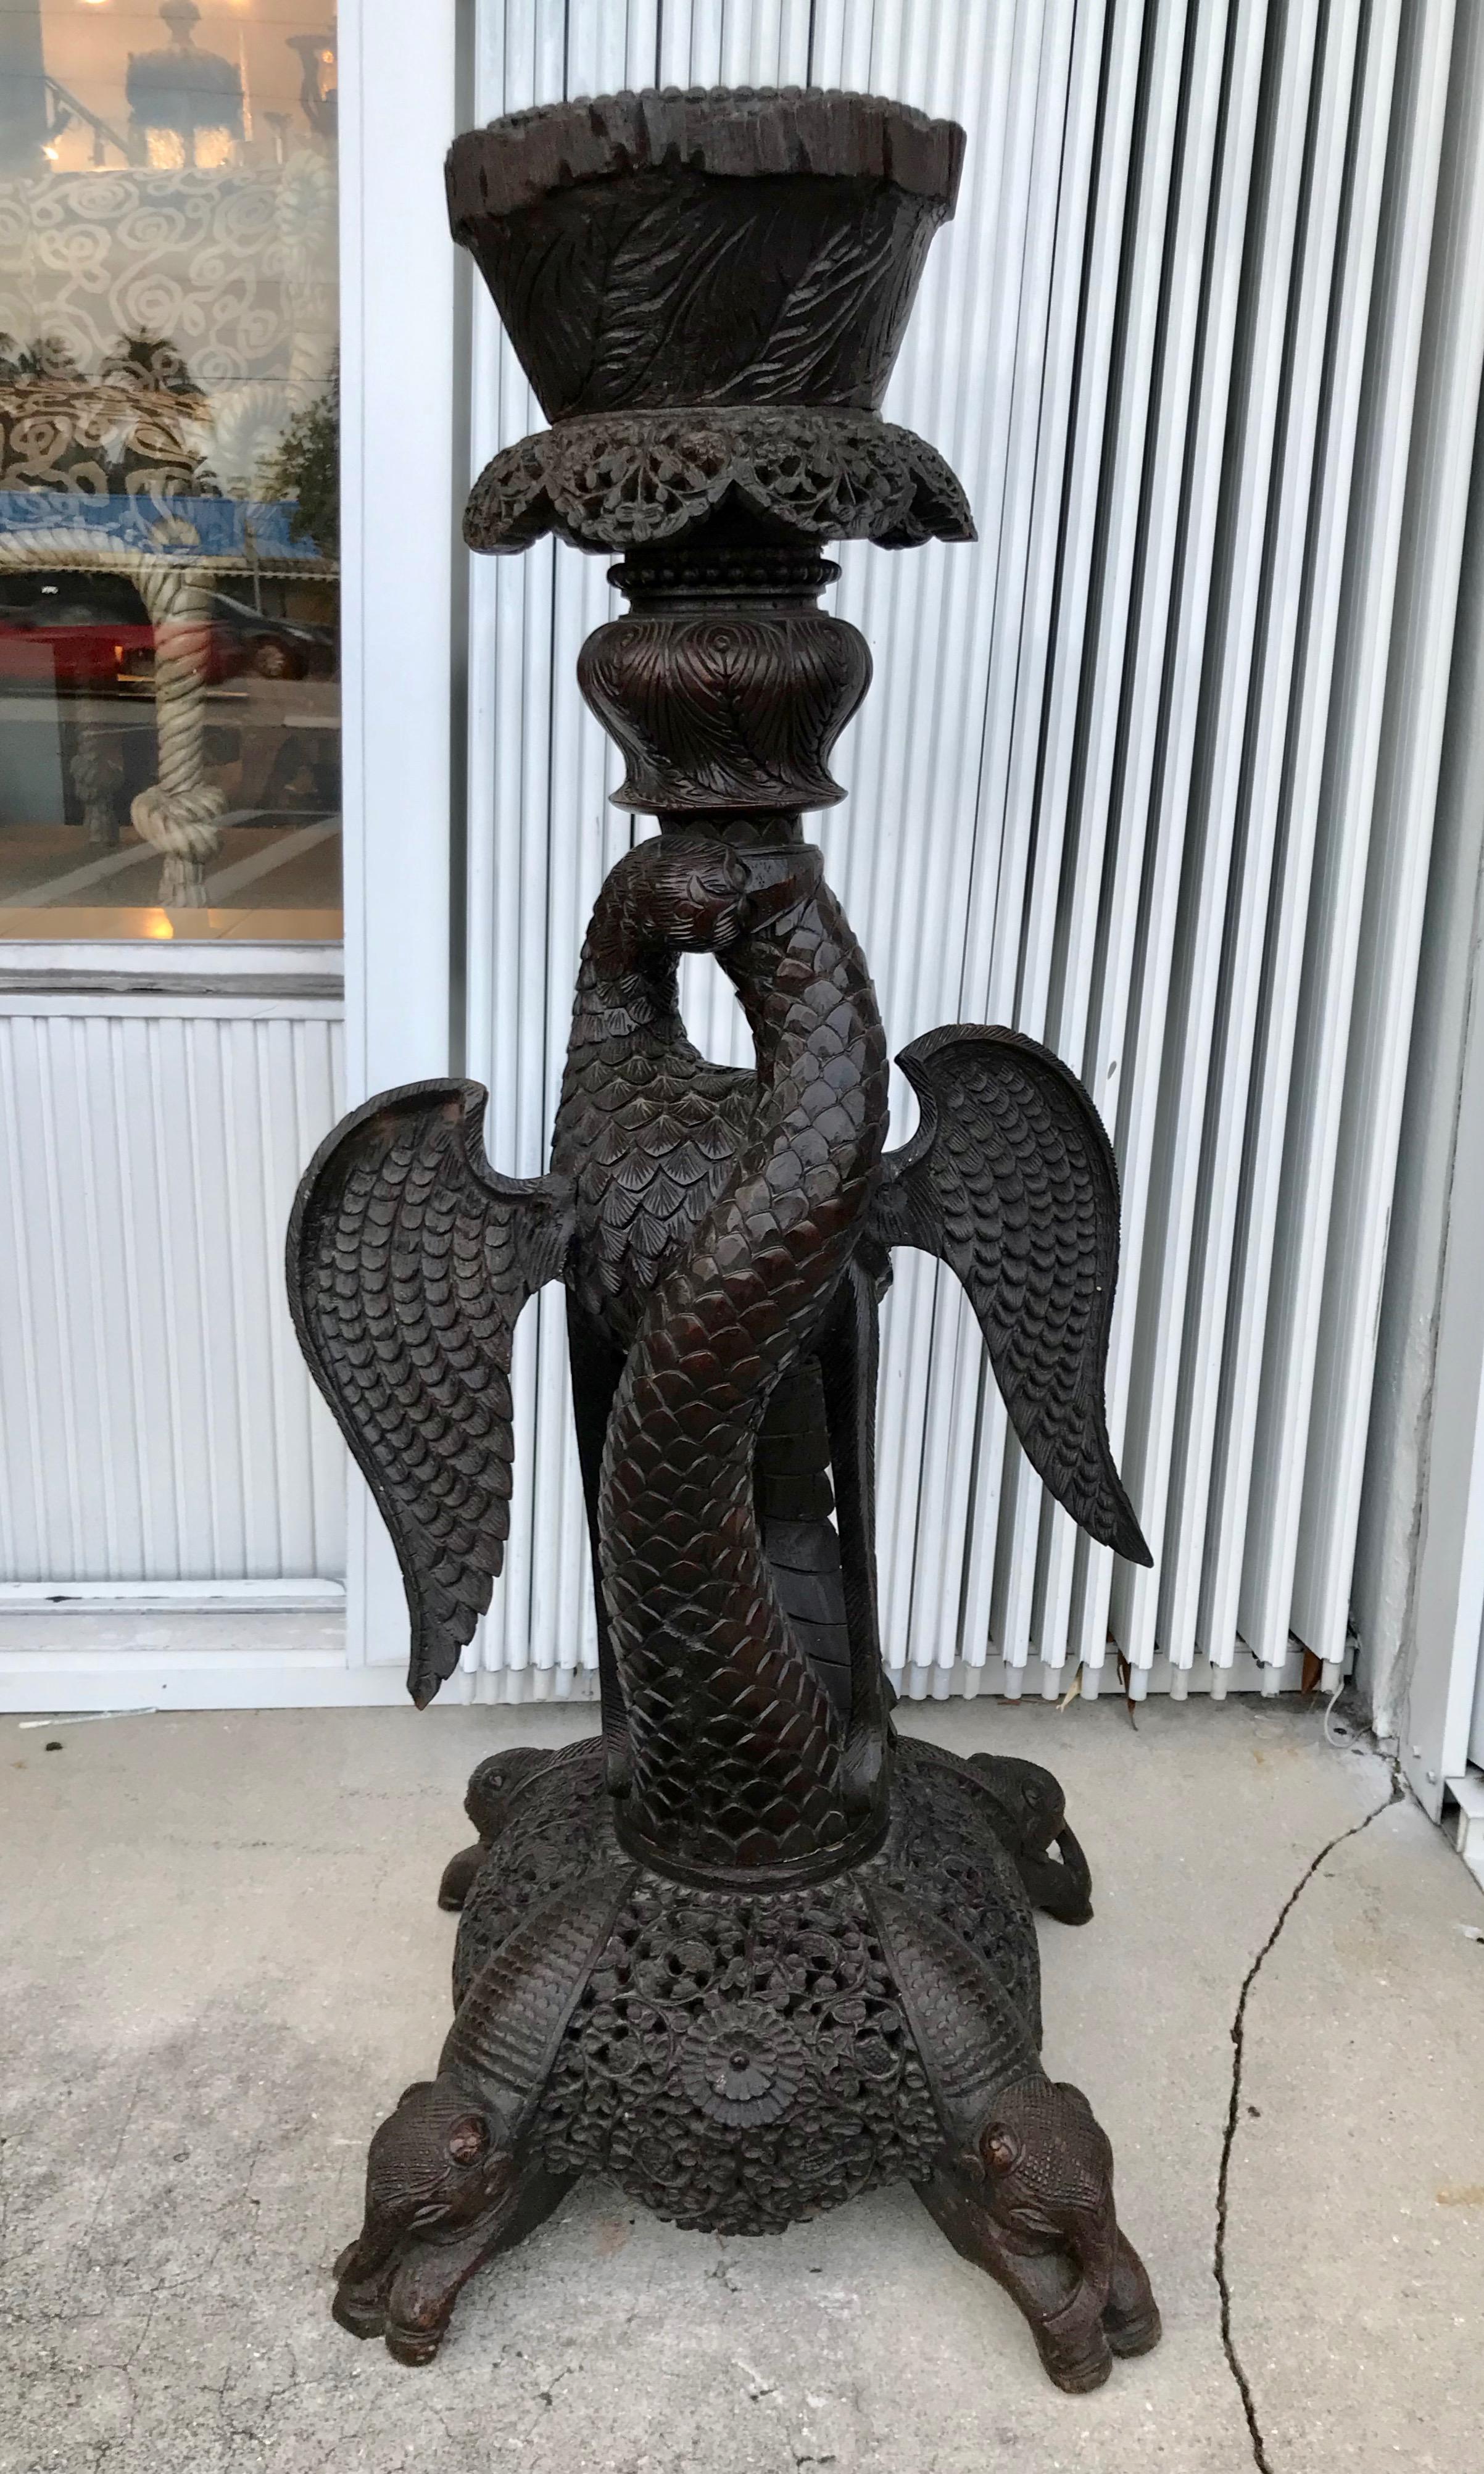 La pièce est minutieusement sculptée et représente un aigle avec un serpent dans la bouche.
Il repose sur une base qui se termine par quatre pieds à motif d'éléphant.
Fabuleuse sculpture en bois dur.